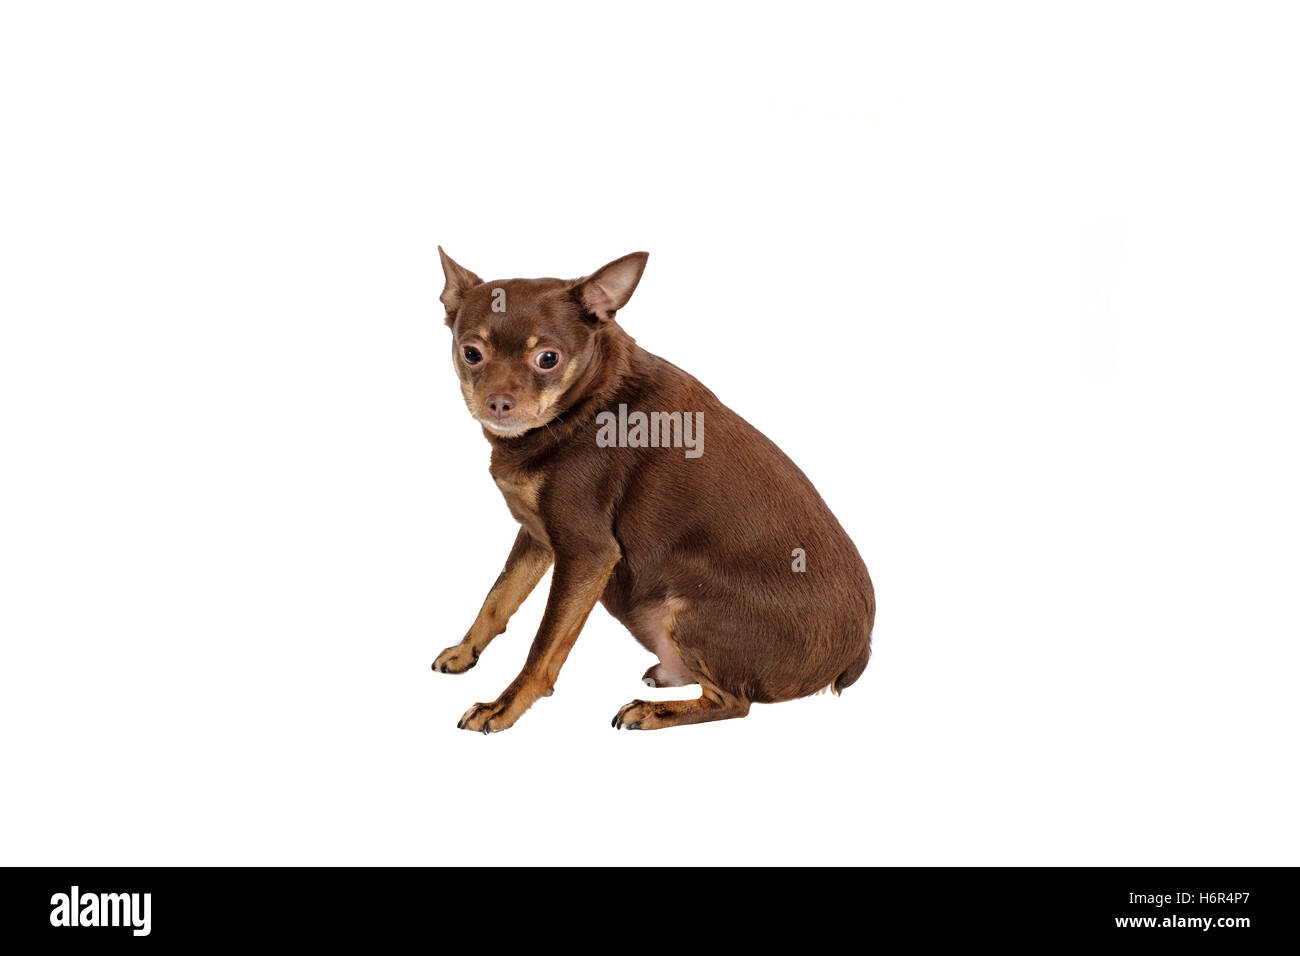 Small sad dog sitting isolated Stock Photo